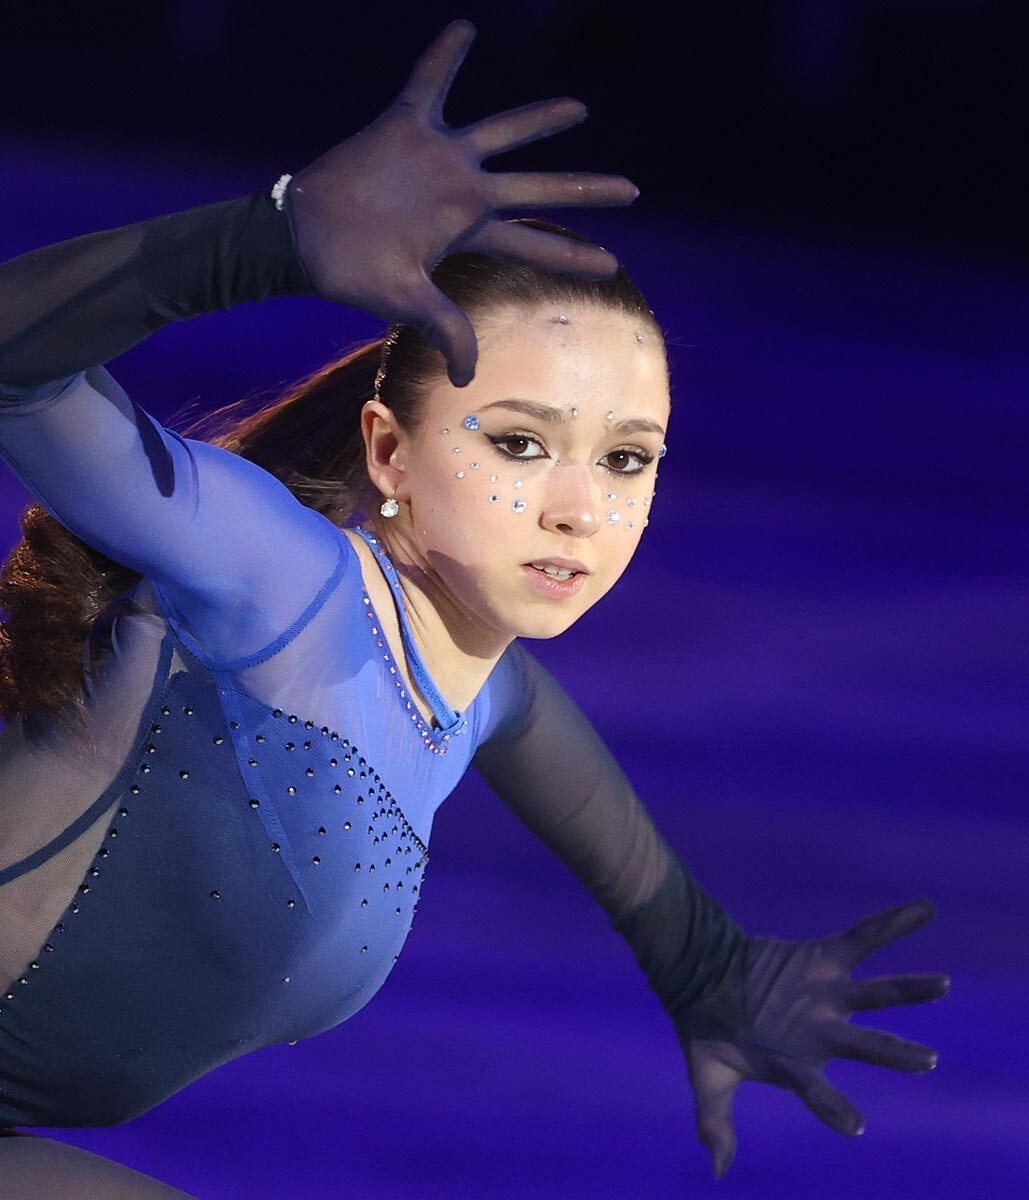 San Petersburgo. Campeonato ruso de patinaje artístico 2022. Kamila Valieva durante las actuaciones de demostración.